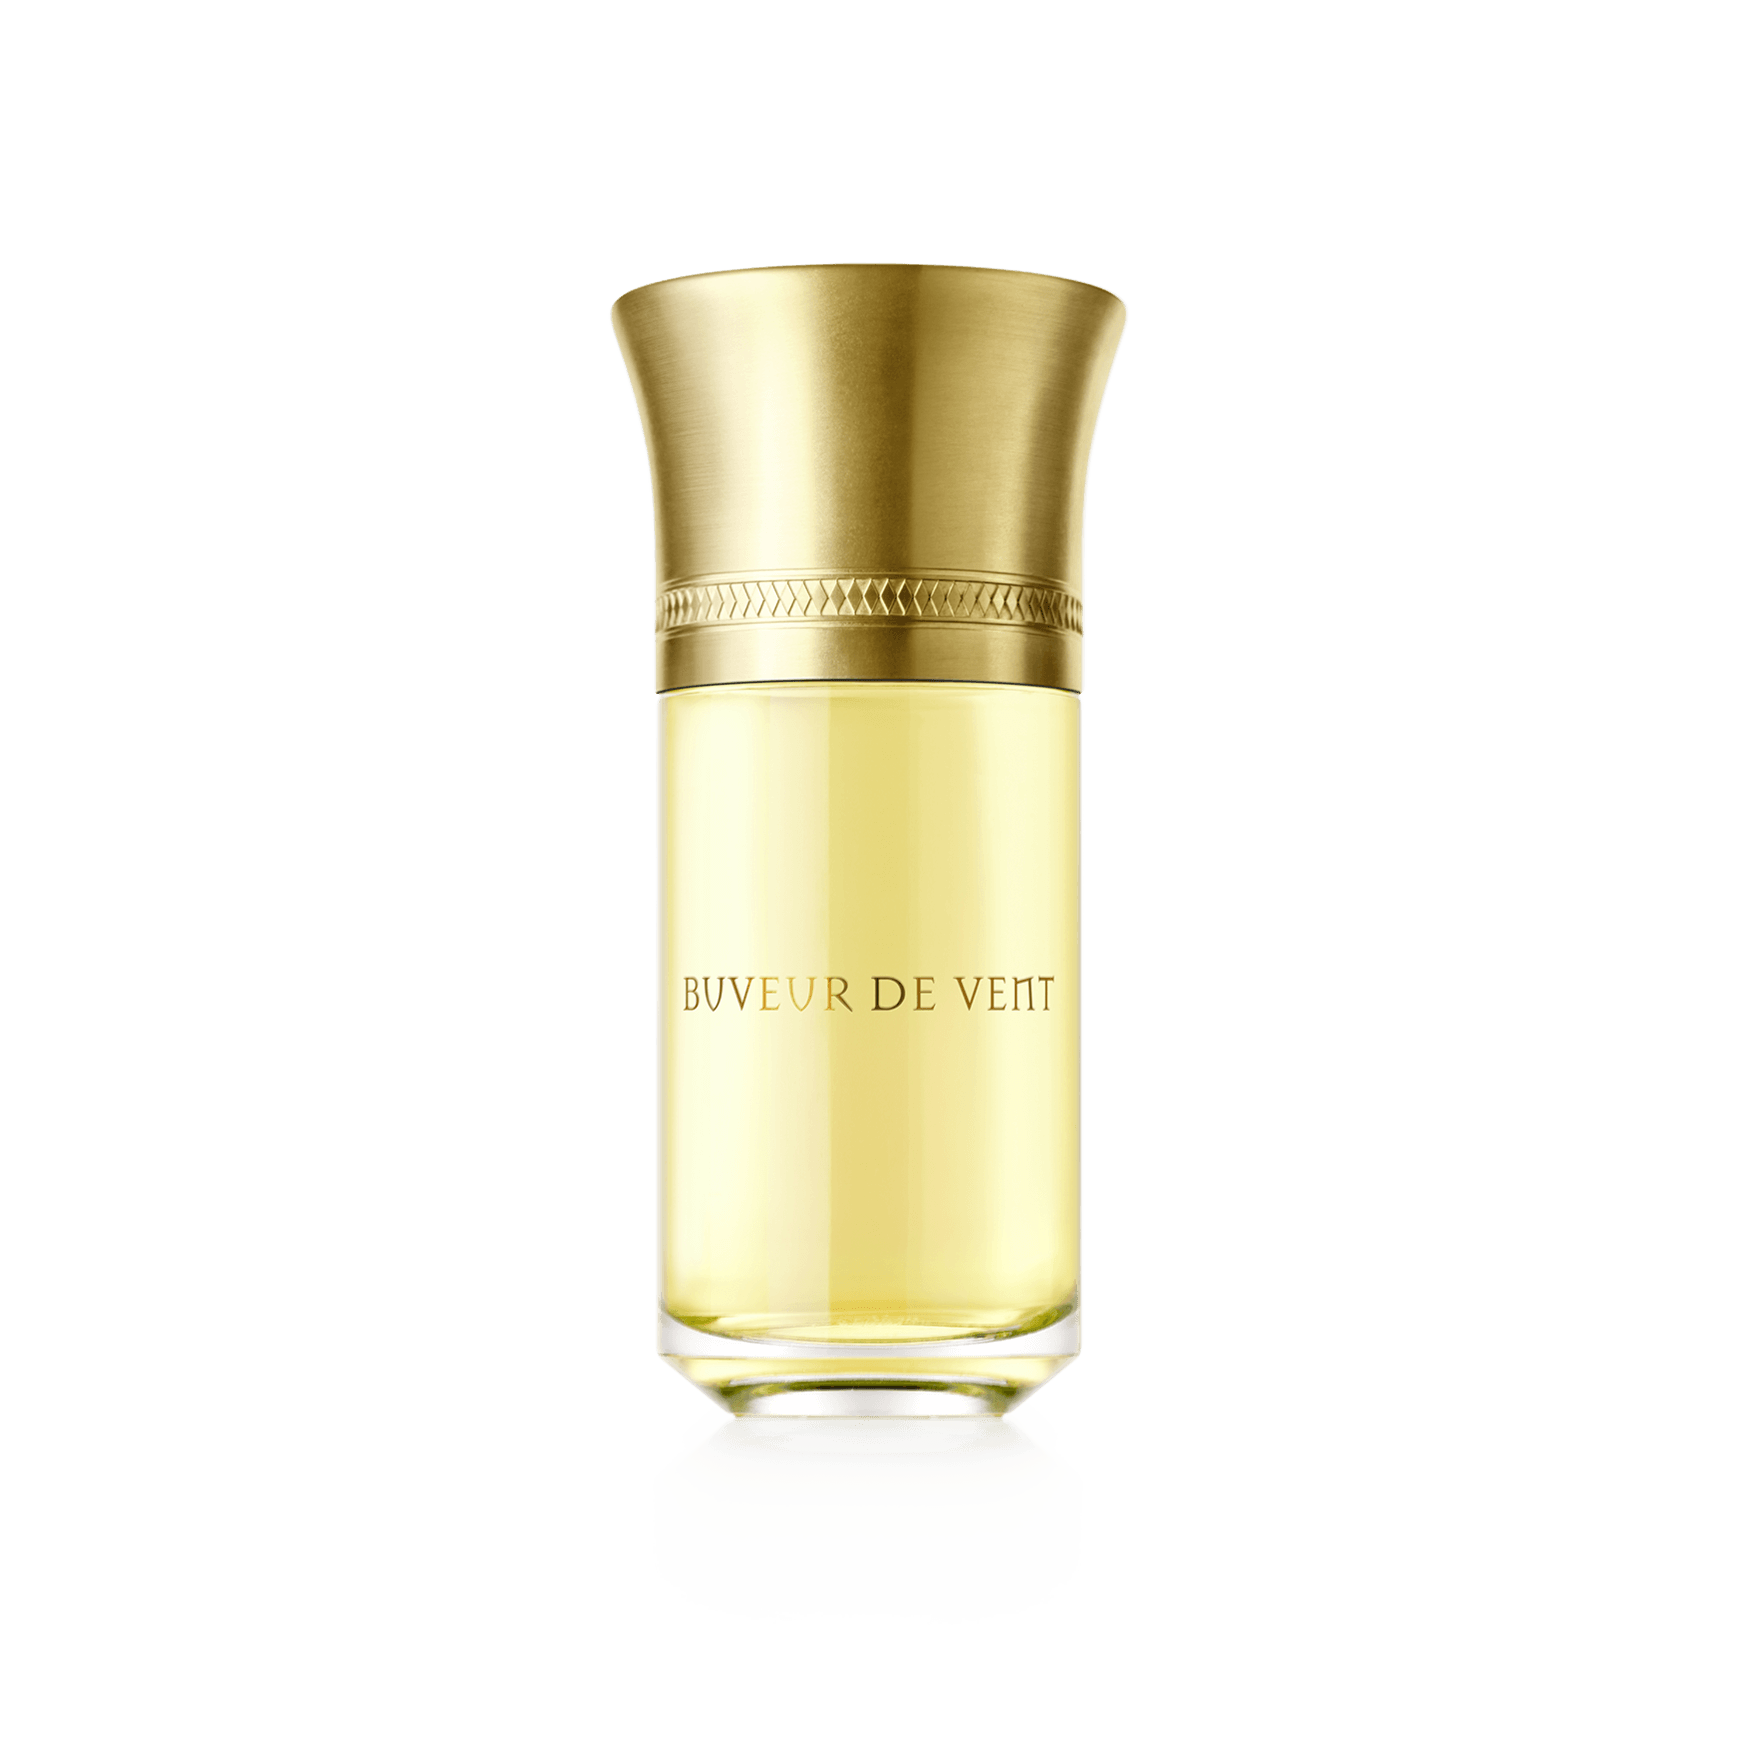 Buveur De Vent Les Liquides Imaginaires perfume - a fragrance for women and  men 2019